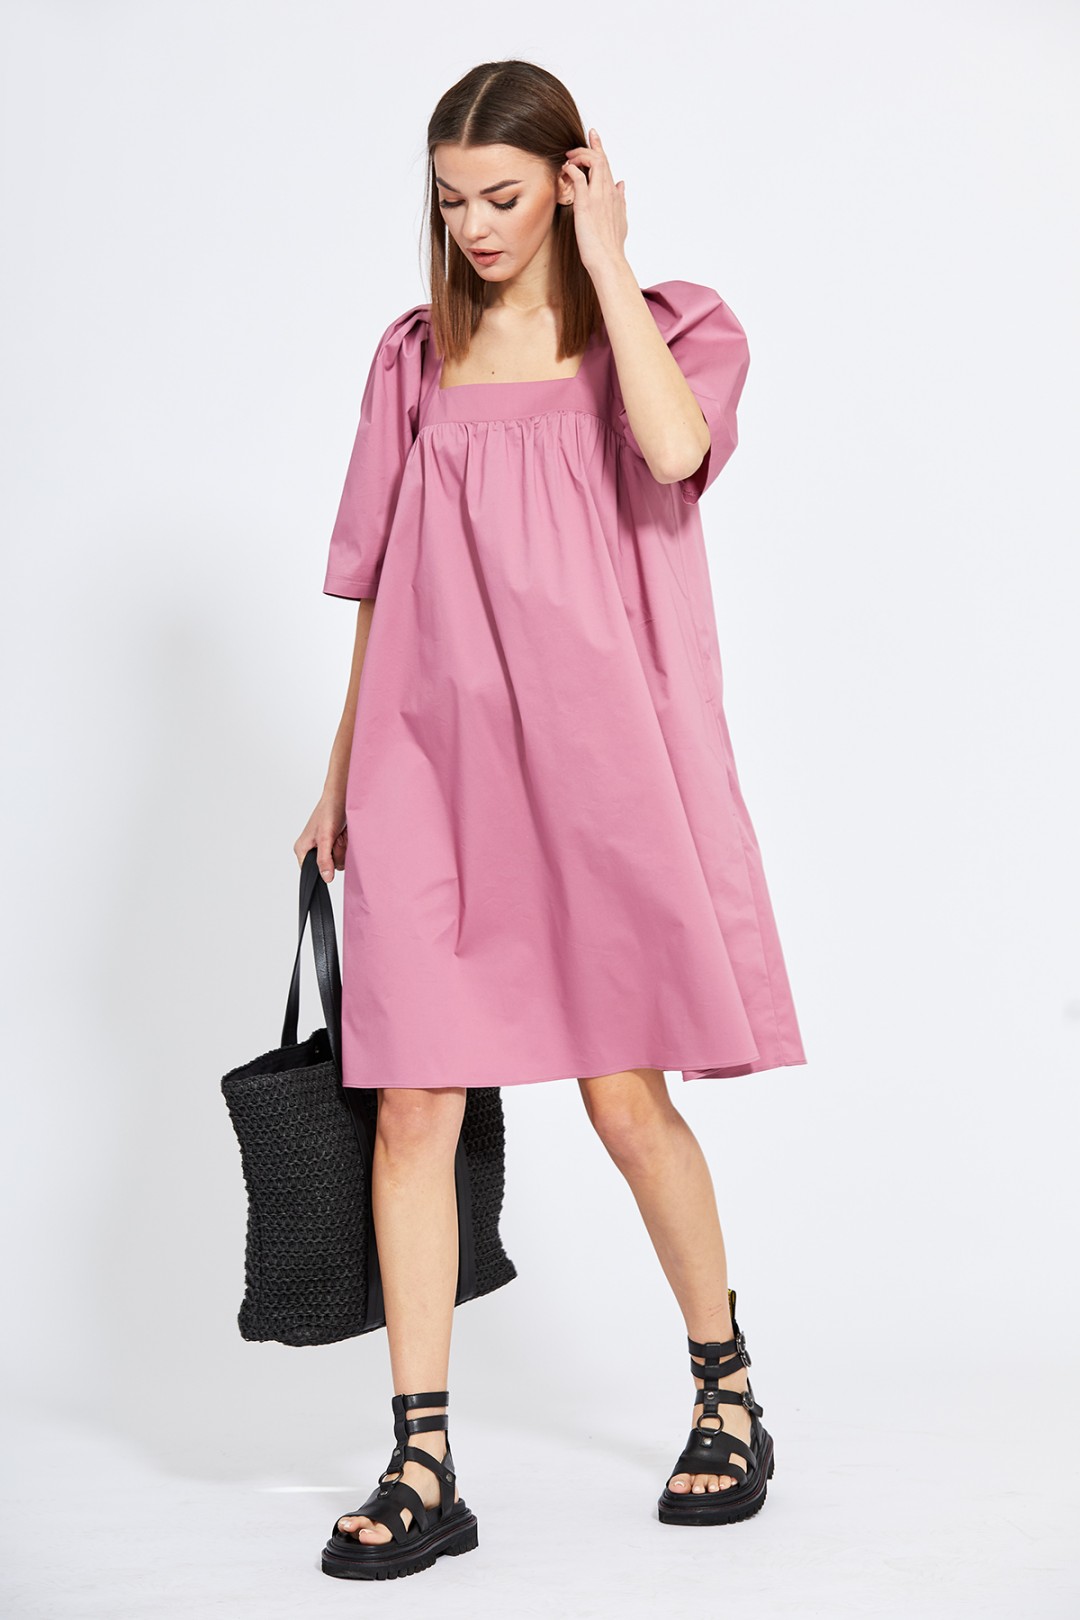 Платье Эола Стиль 2044 темно-розовый